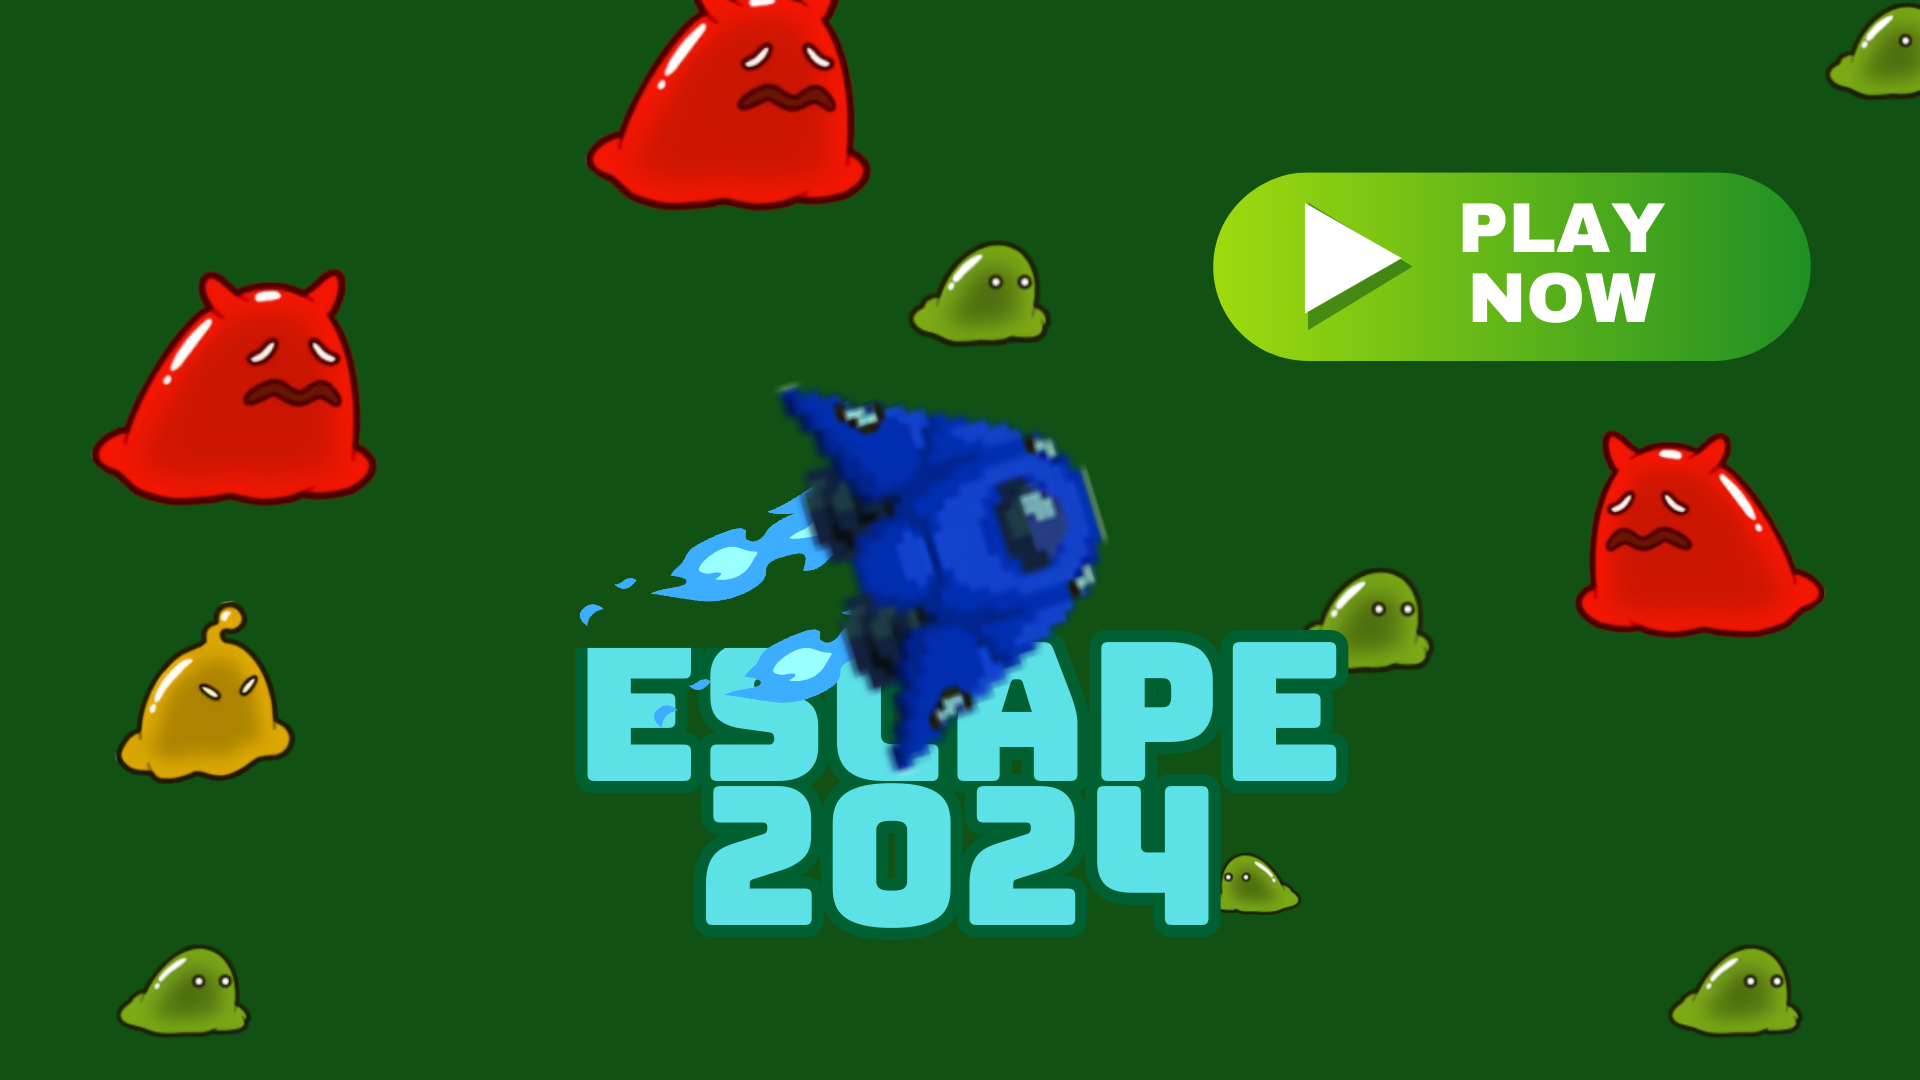 Escape2024